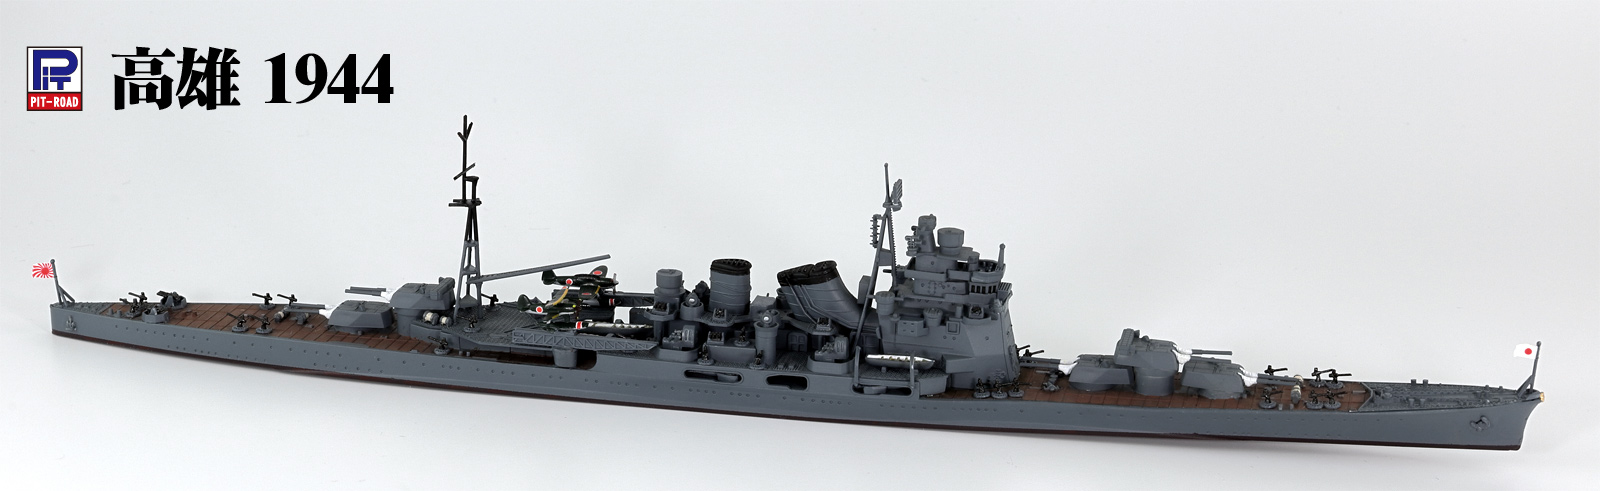 1/700 日本海軍 重巡洋艦 高雄 1944/1942